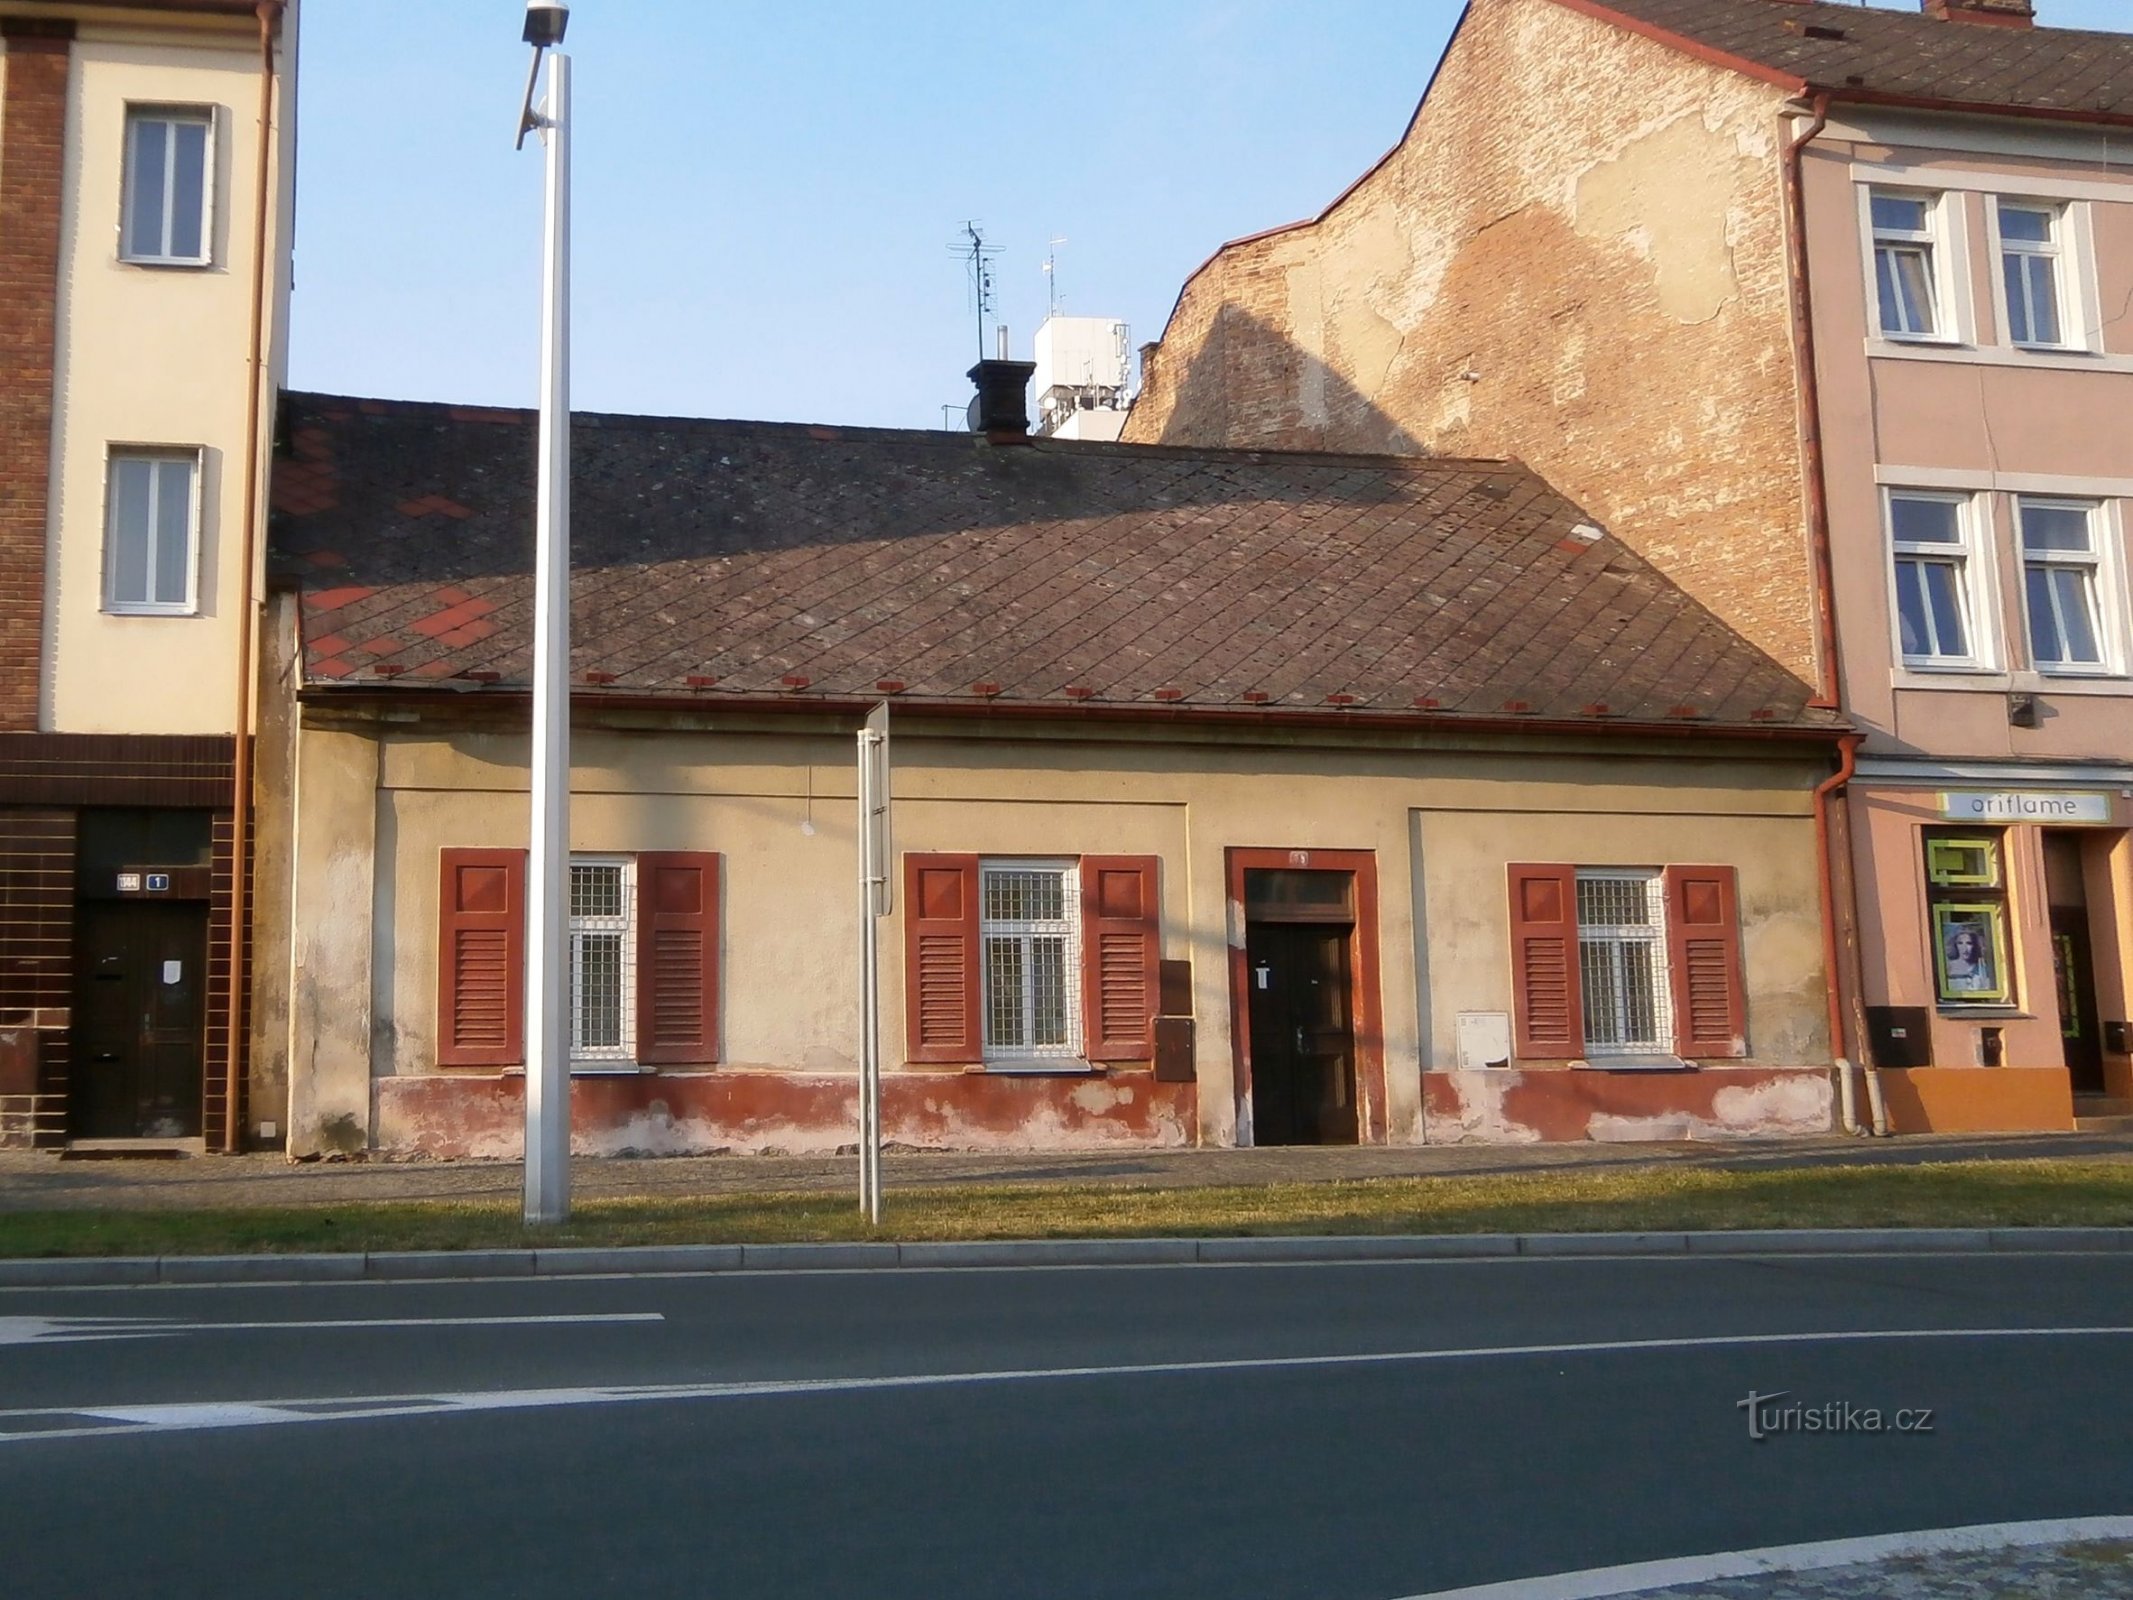 Stanica br. 78 (Hradec Králové, 27.7.2014.)